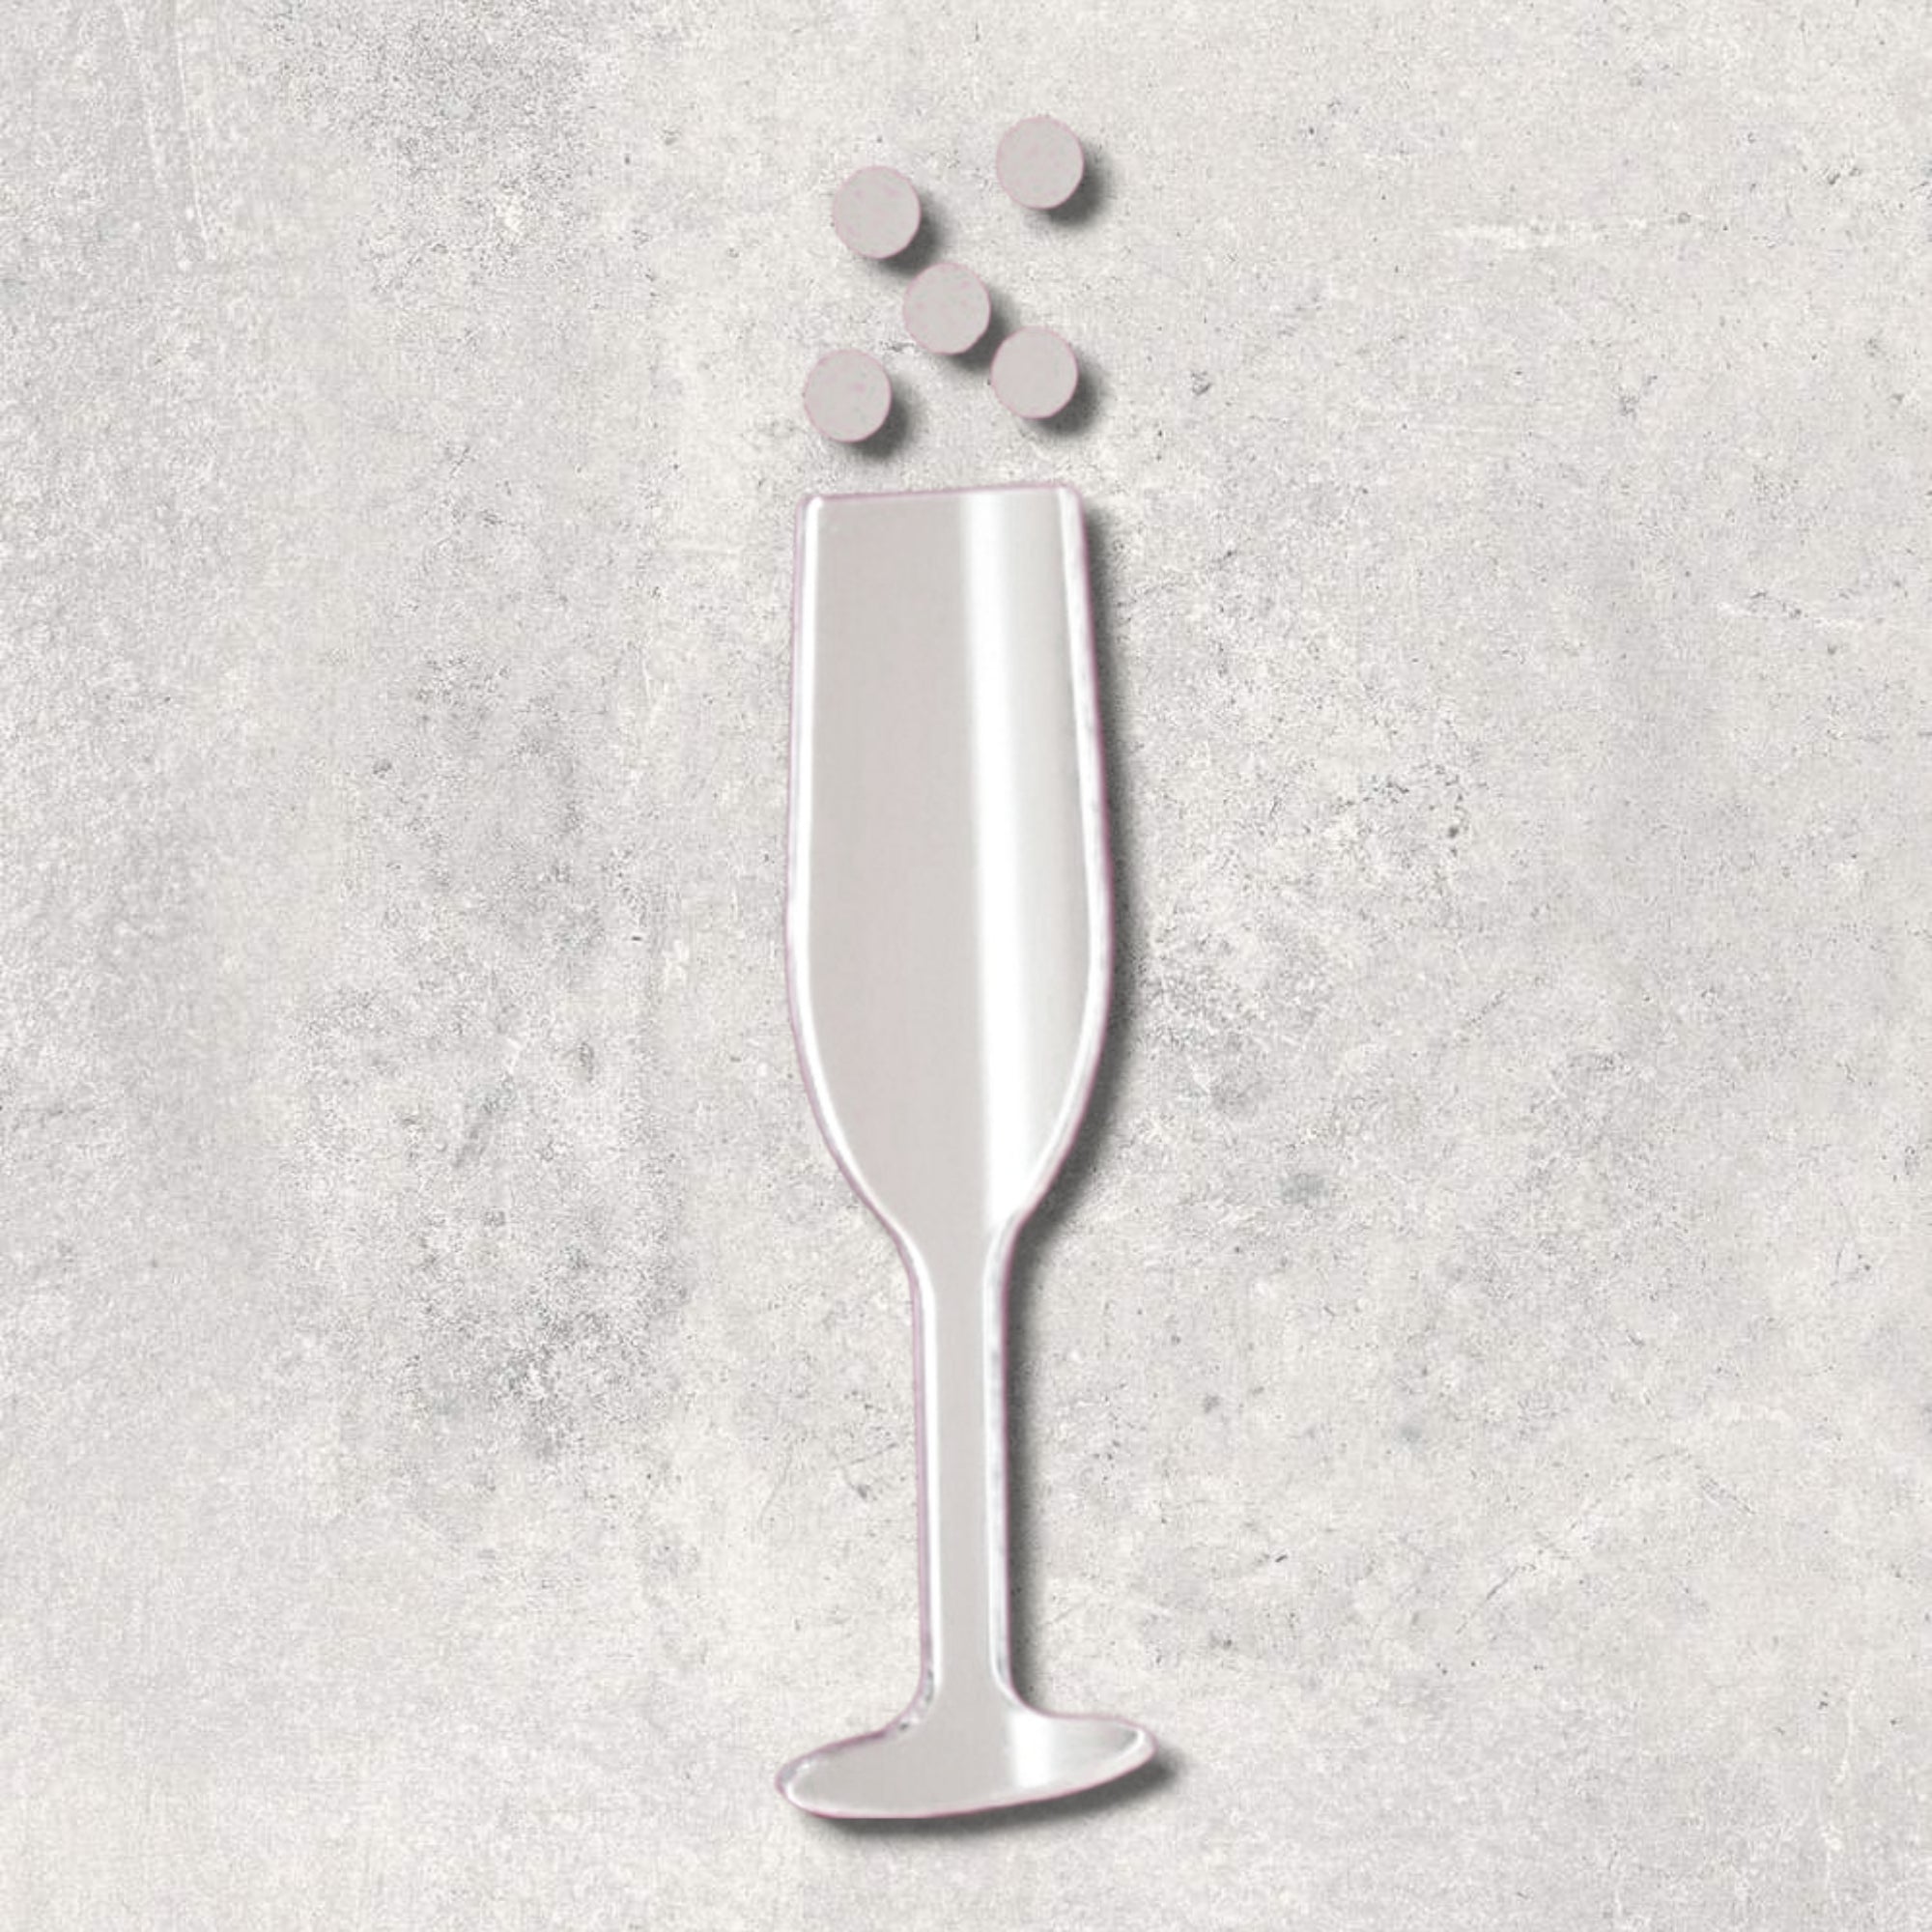 Champagne Flute & Bubbles Acrylic Mirror